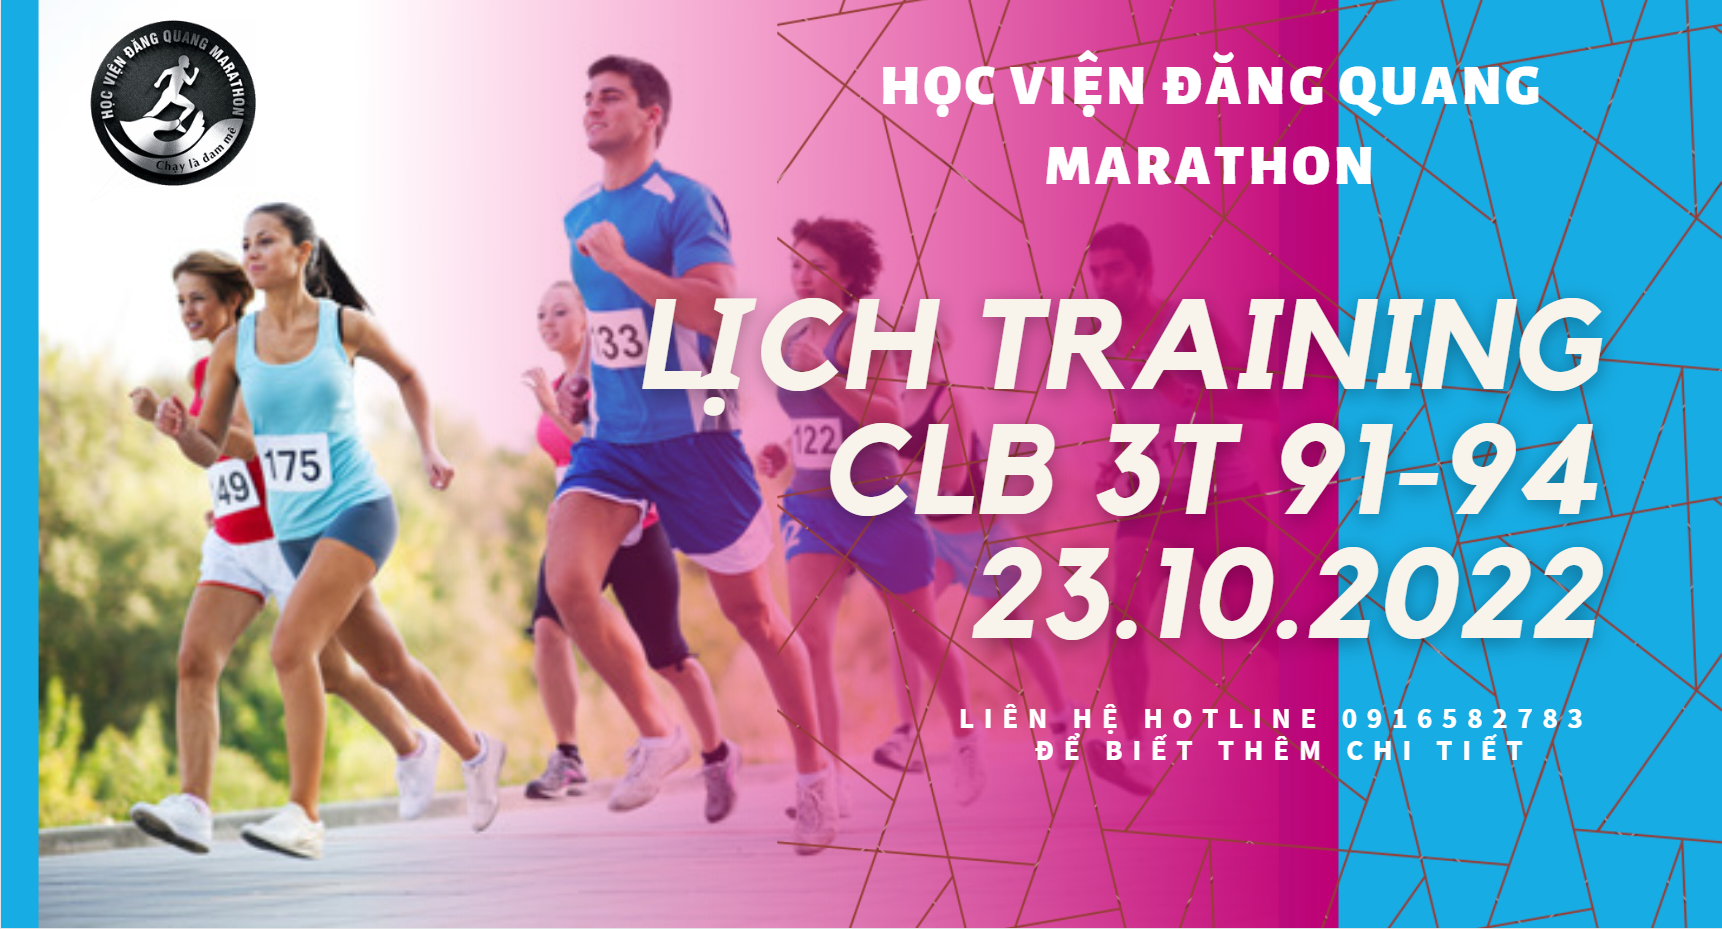 Lịch training 23.10.2022 tại Hà Nội - Chỉnh dáng chạy bộ cho CLB 3T 91-94